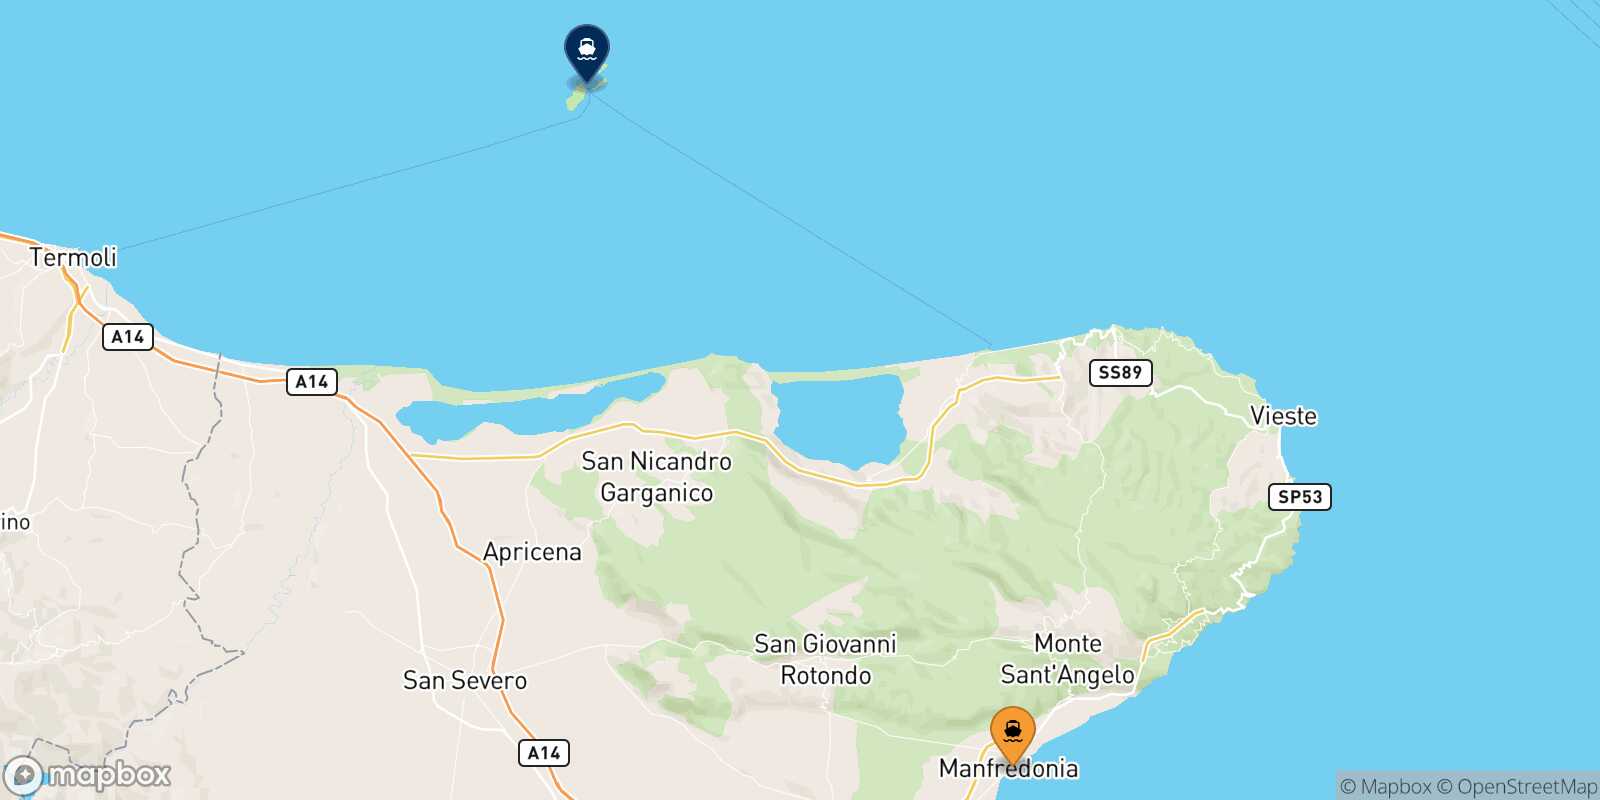 Mappa delle destinazioni raggiungibili da Manfredonia